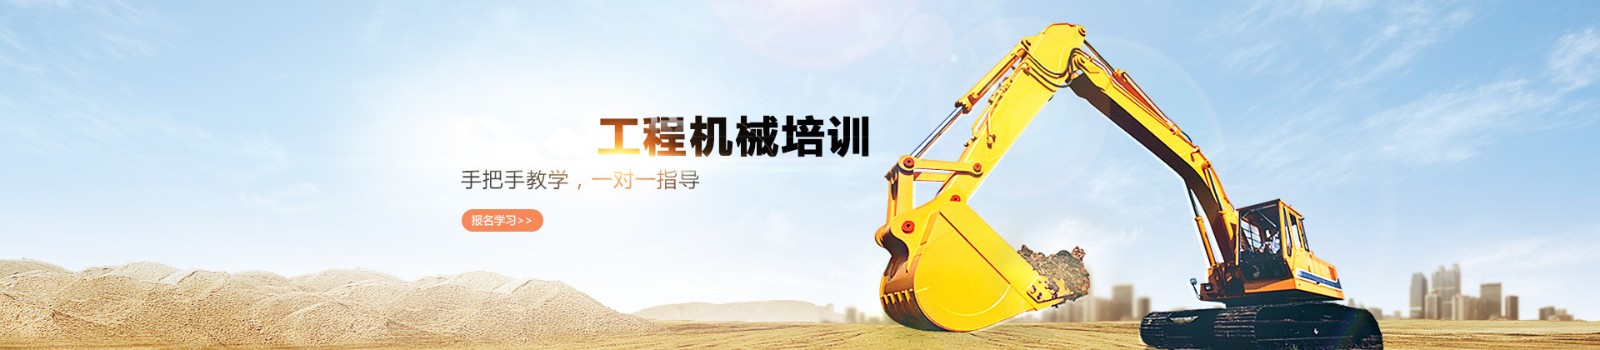 渭南挖掘机培训学校 横幅广告